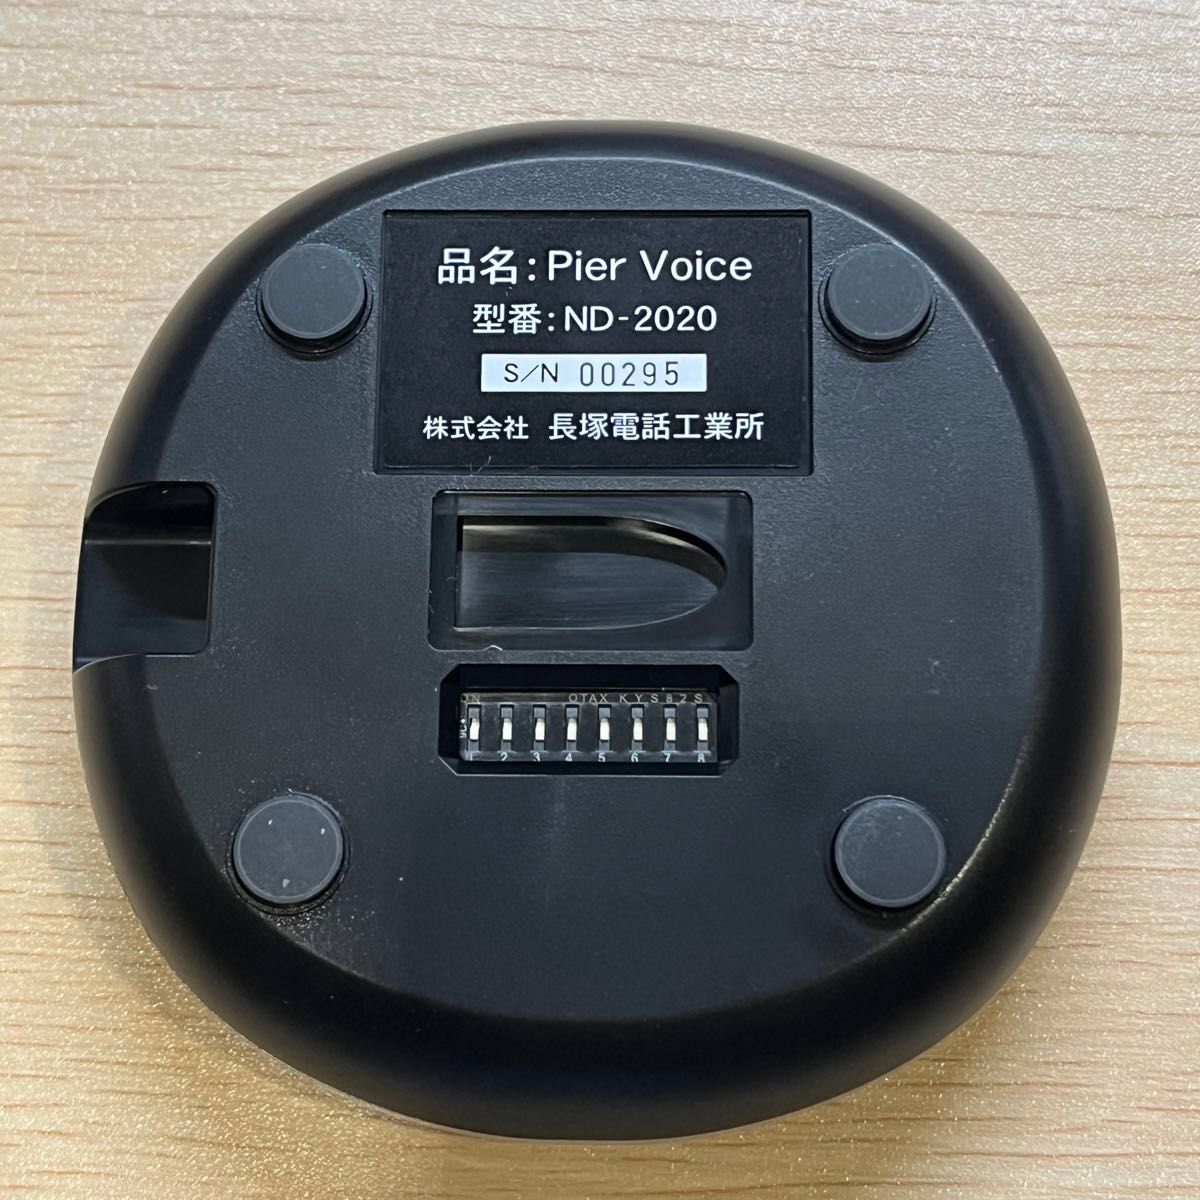 長塚電話工業所 Pier Voice ピアボイス 単一指向性/2点指向性切替式 USBマイク【Web会議/通話/音声認識などに】